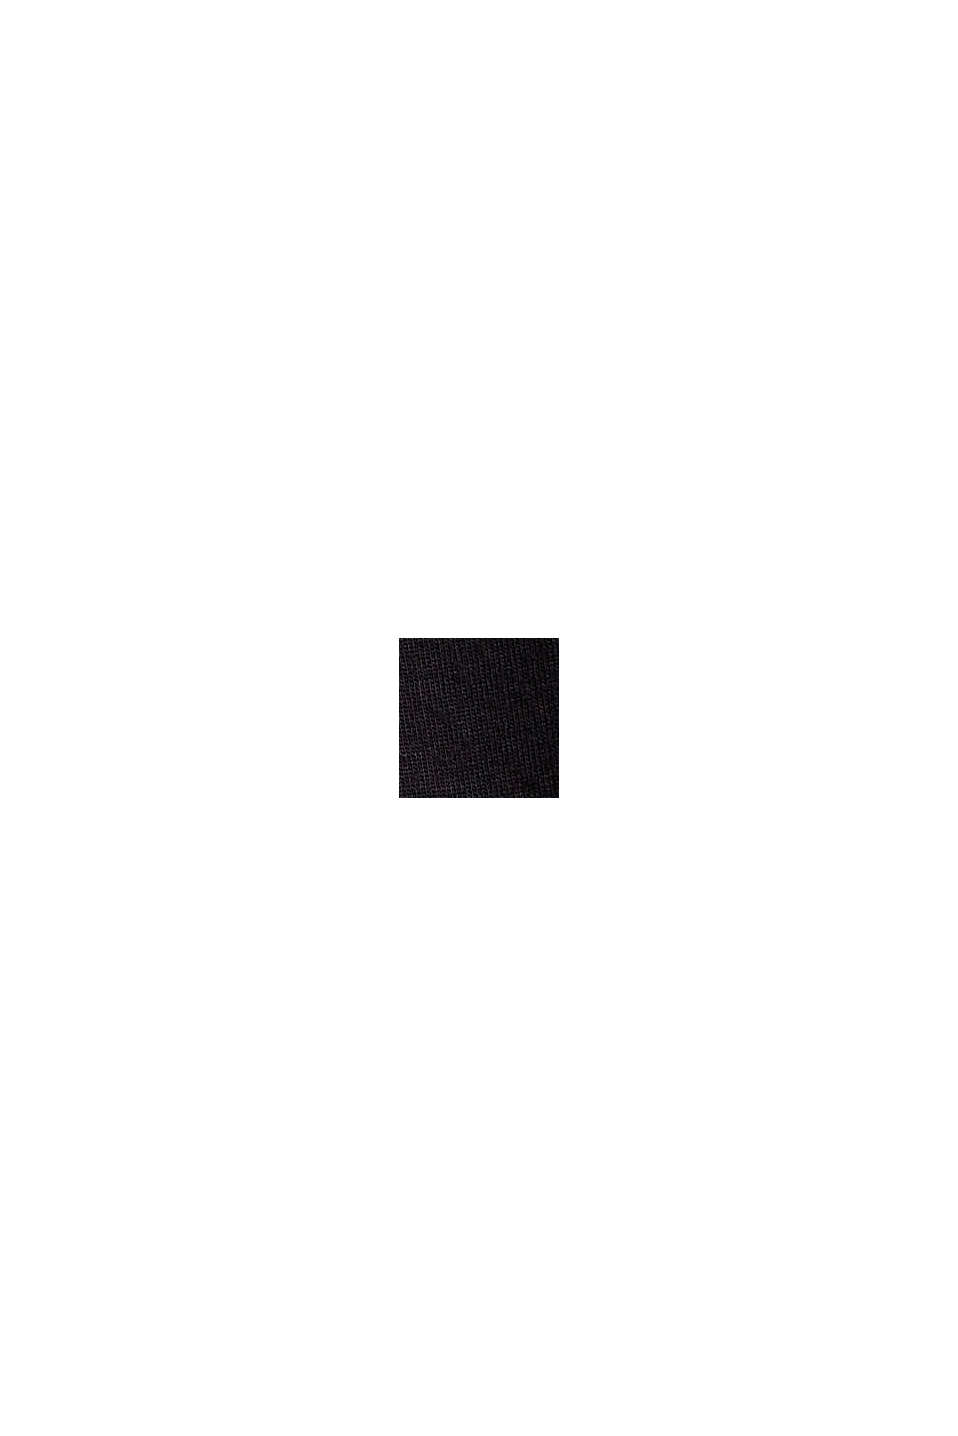 Sudadera de neopreno con detalle de botón, BLACK, swatch